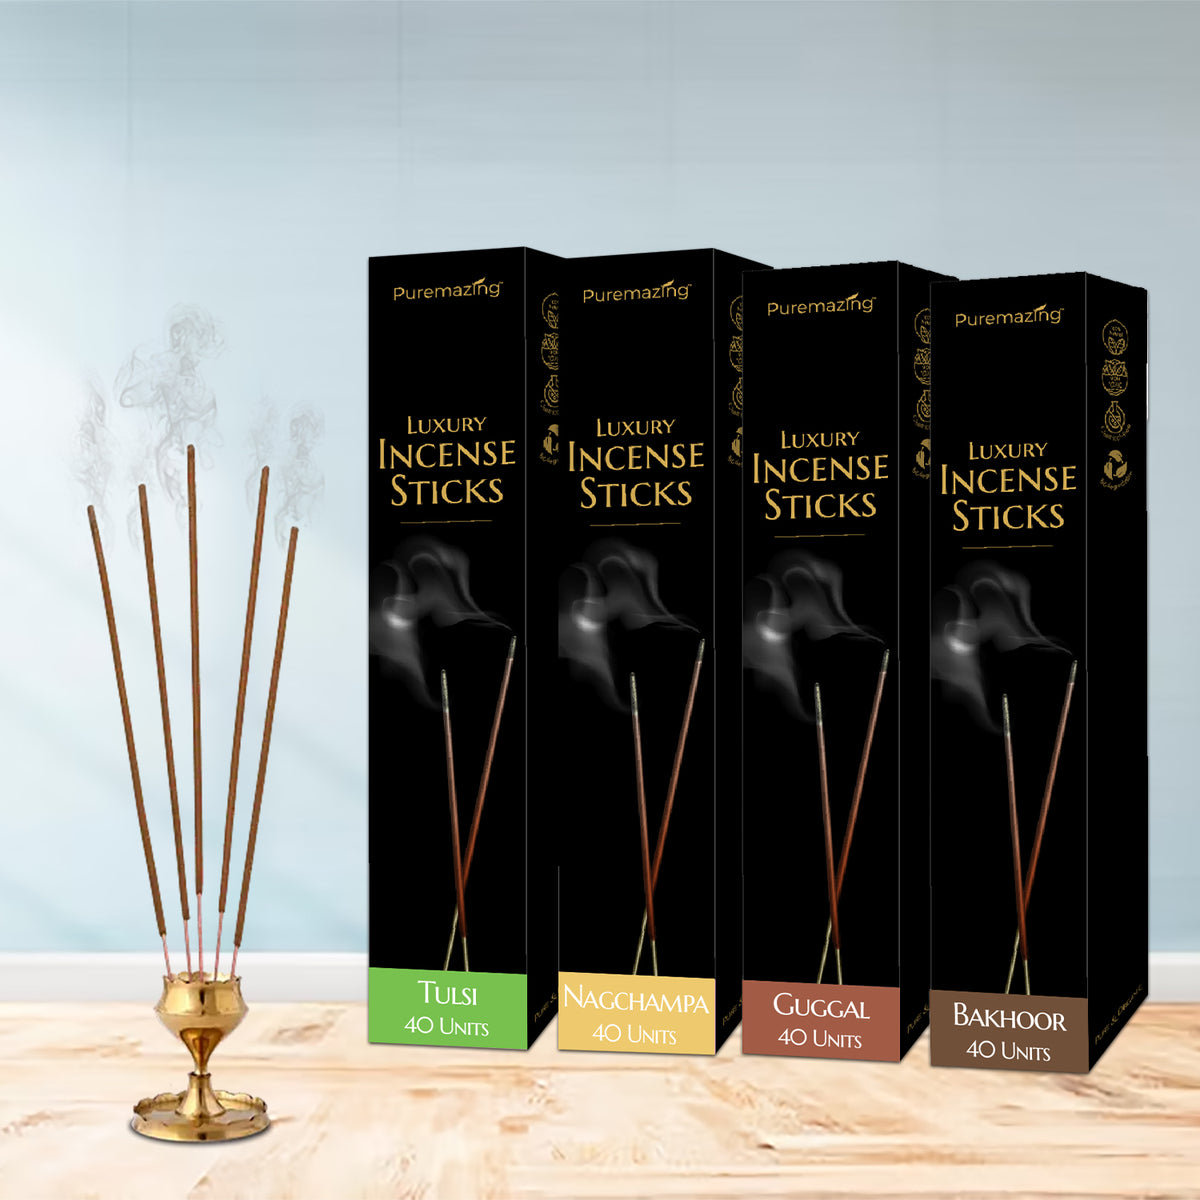 Classic Pooja Box Combo | 4 Incense Sticks, 2 Incense Cones & 6 Sambrani Cups | 100% Natural Incense Stick